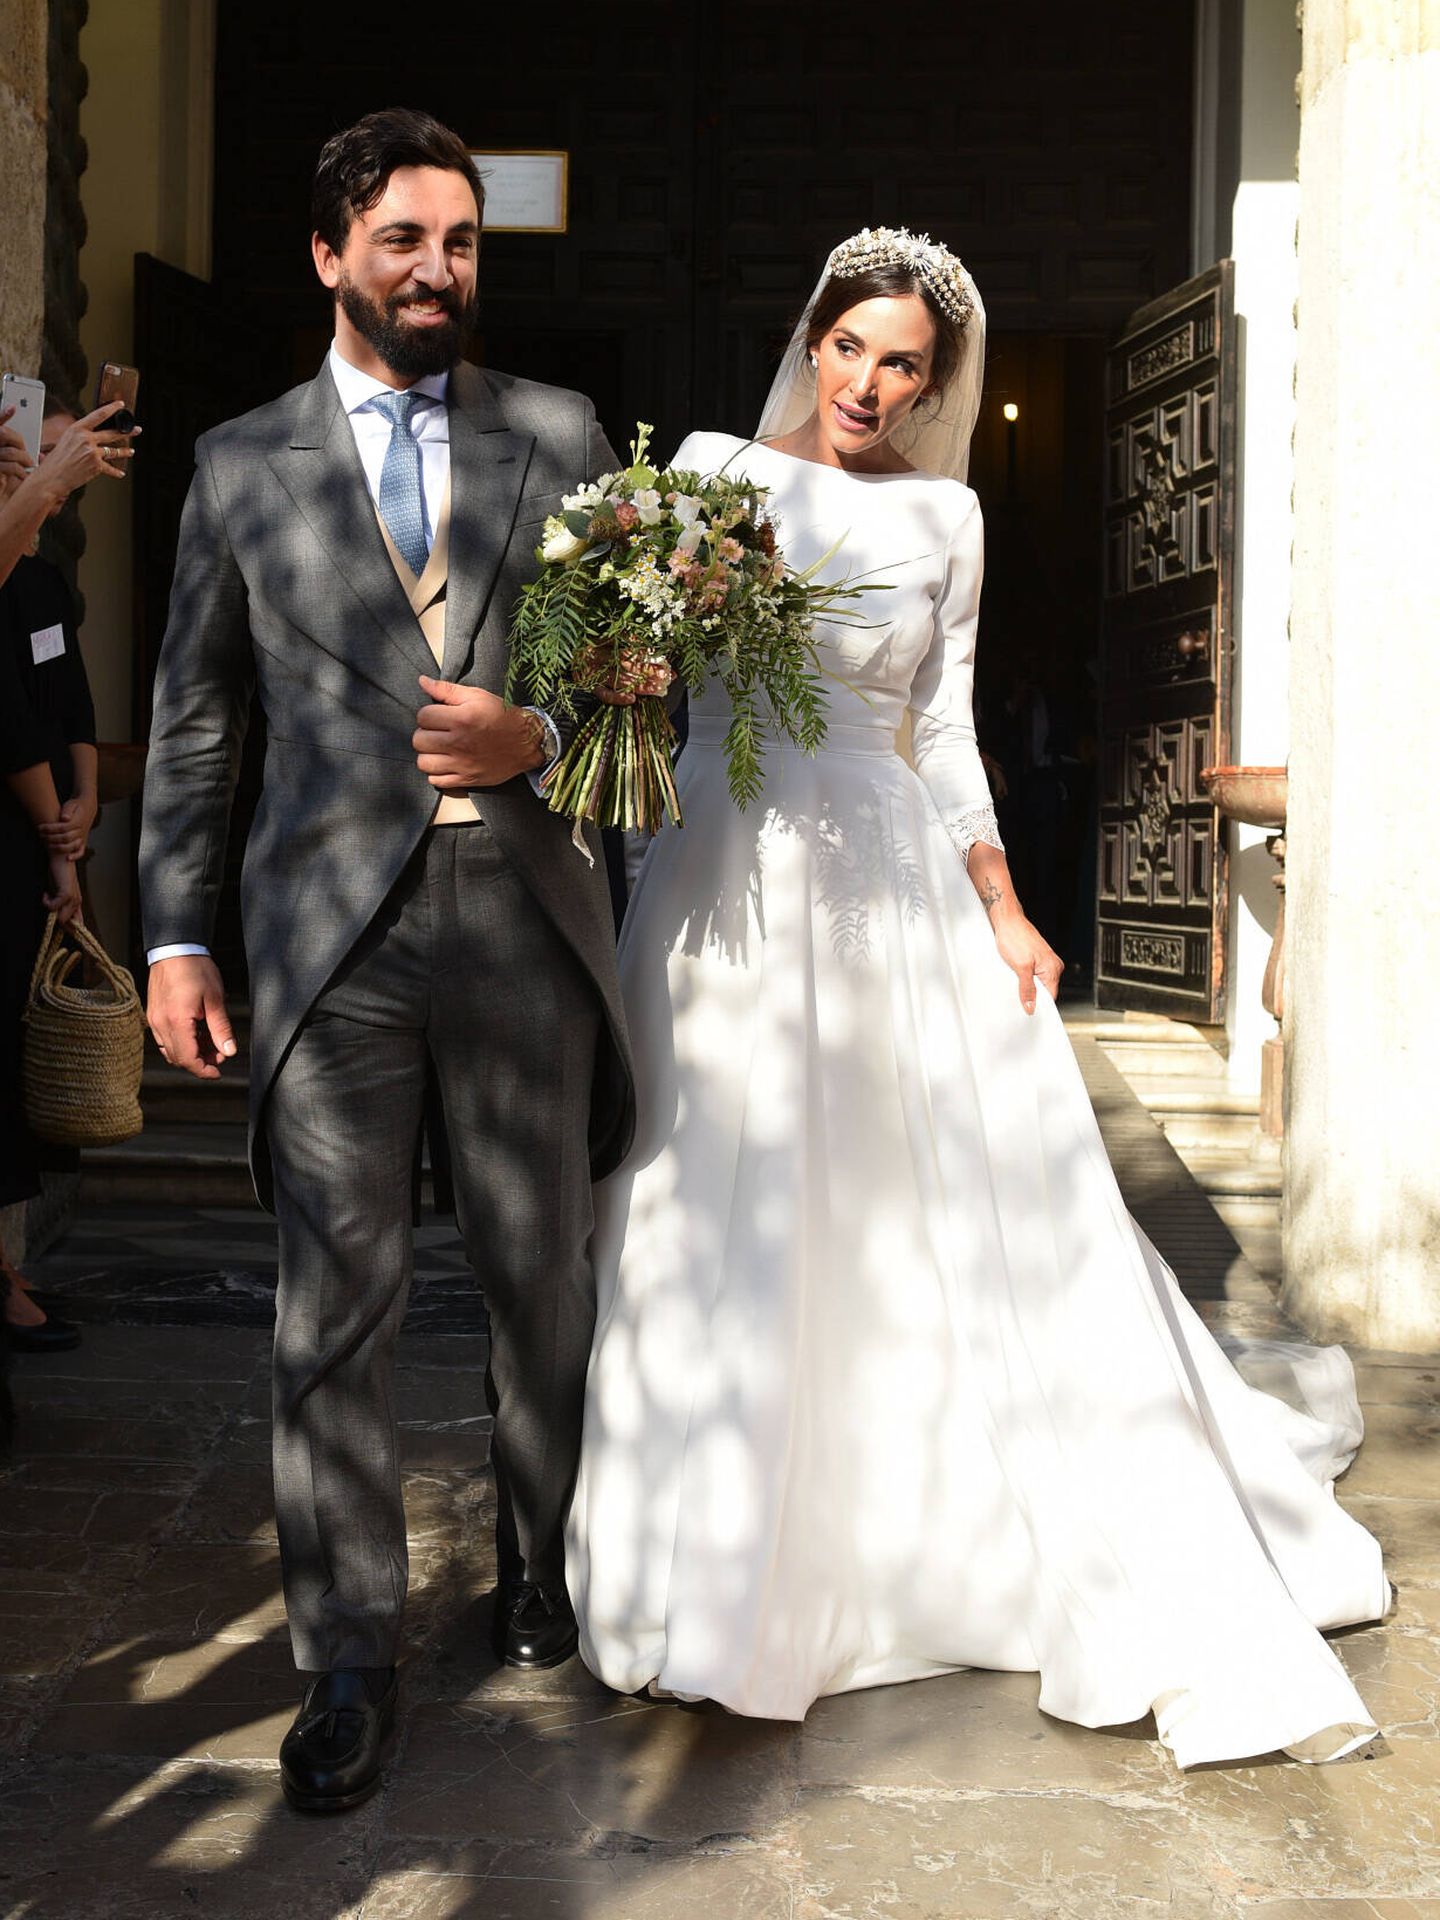 Coco Robatto y Rocío Osorno celebraron su boda en 2019, tras dos hijos en común. (Gtres)